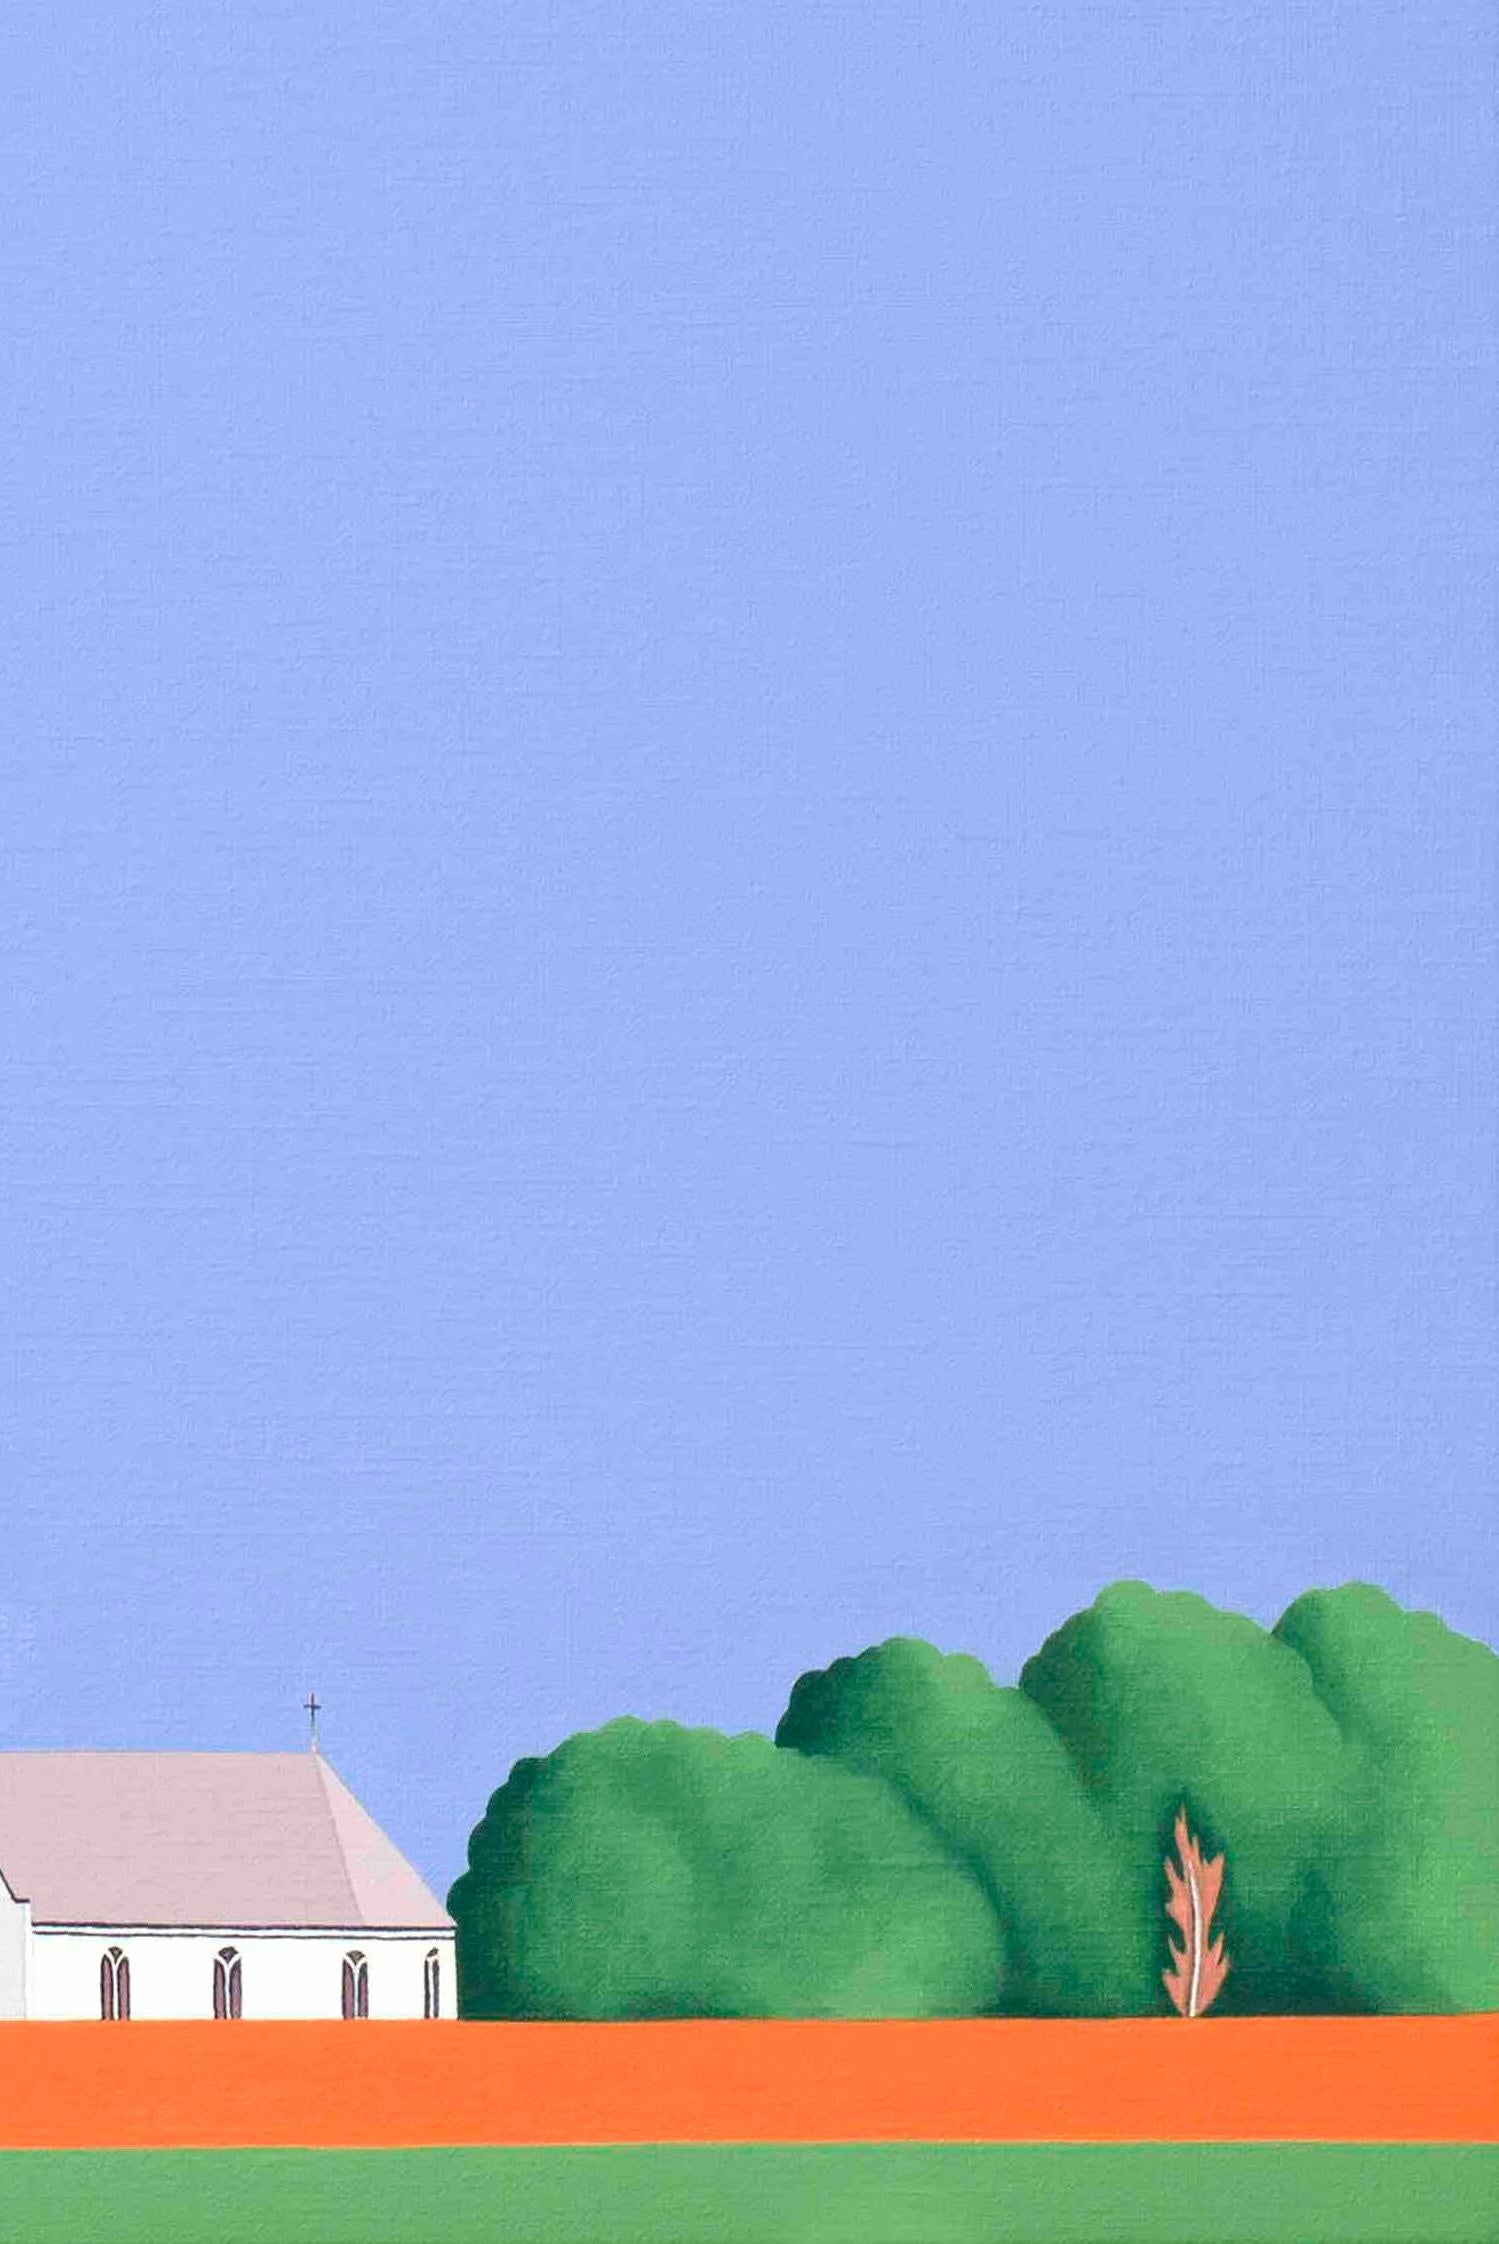 Dieses schöne Gemälde von Jeroen Allart ist Teil seiner minimalistischen Landschafts- und Tiermalerei, die er in seinem Heimatland, den Niederlanden, geschaffen hat.
Ein Bauernhof steht vor Ihnen am Horizont. Eine Windmühle durchschneidet